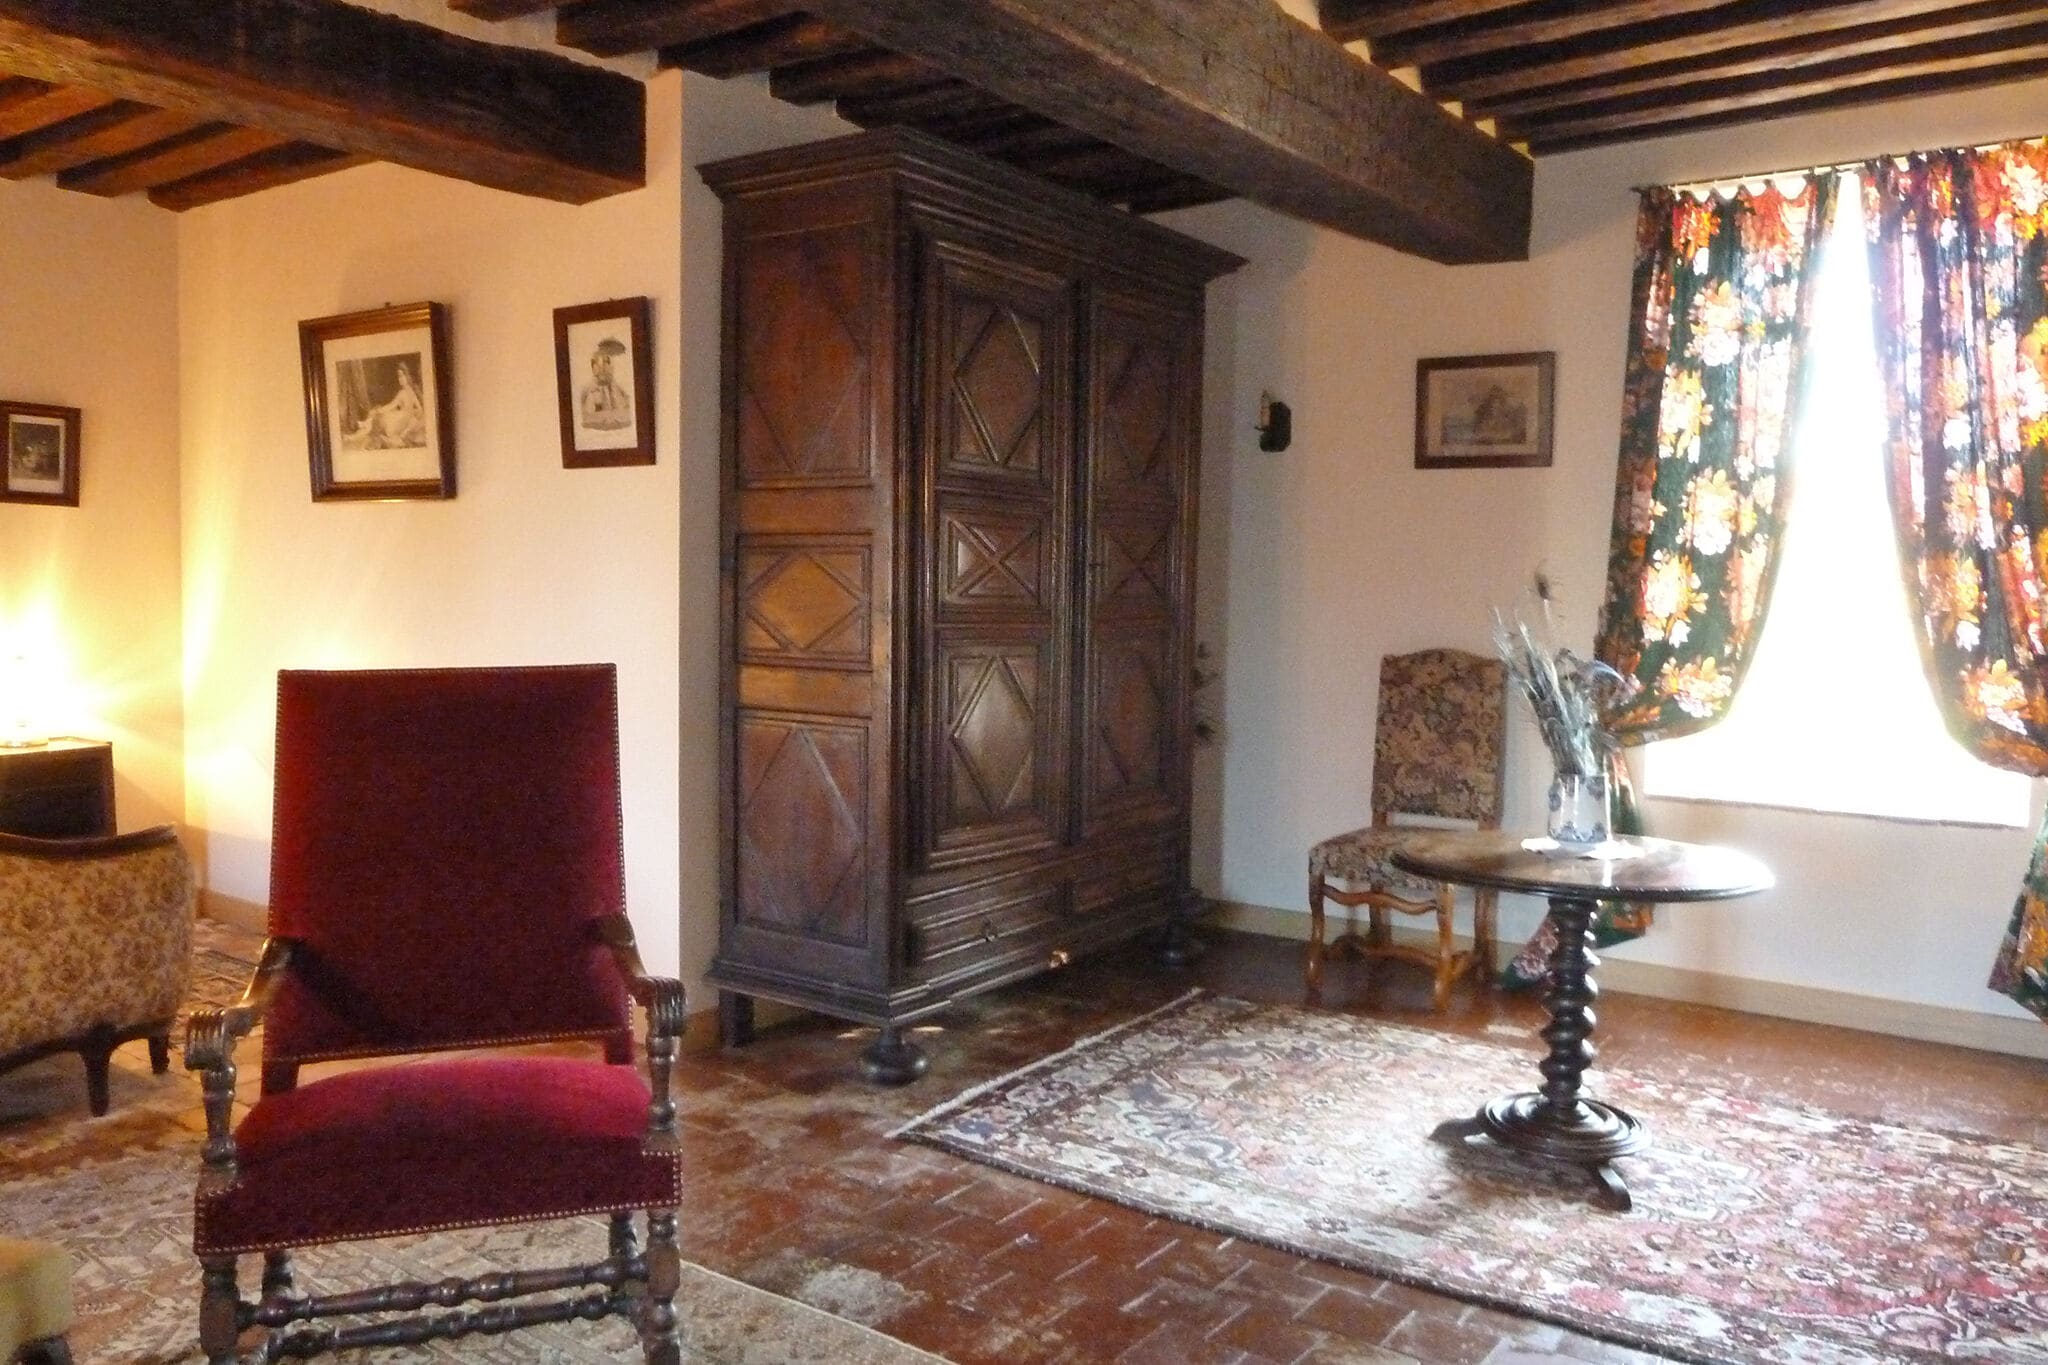 Gastenverblijf in een luxueus kasteel in de Allierstreek van Frankrijk